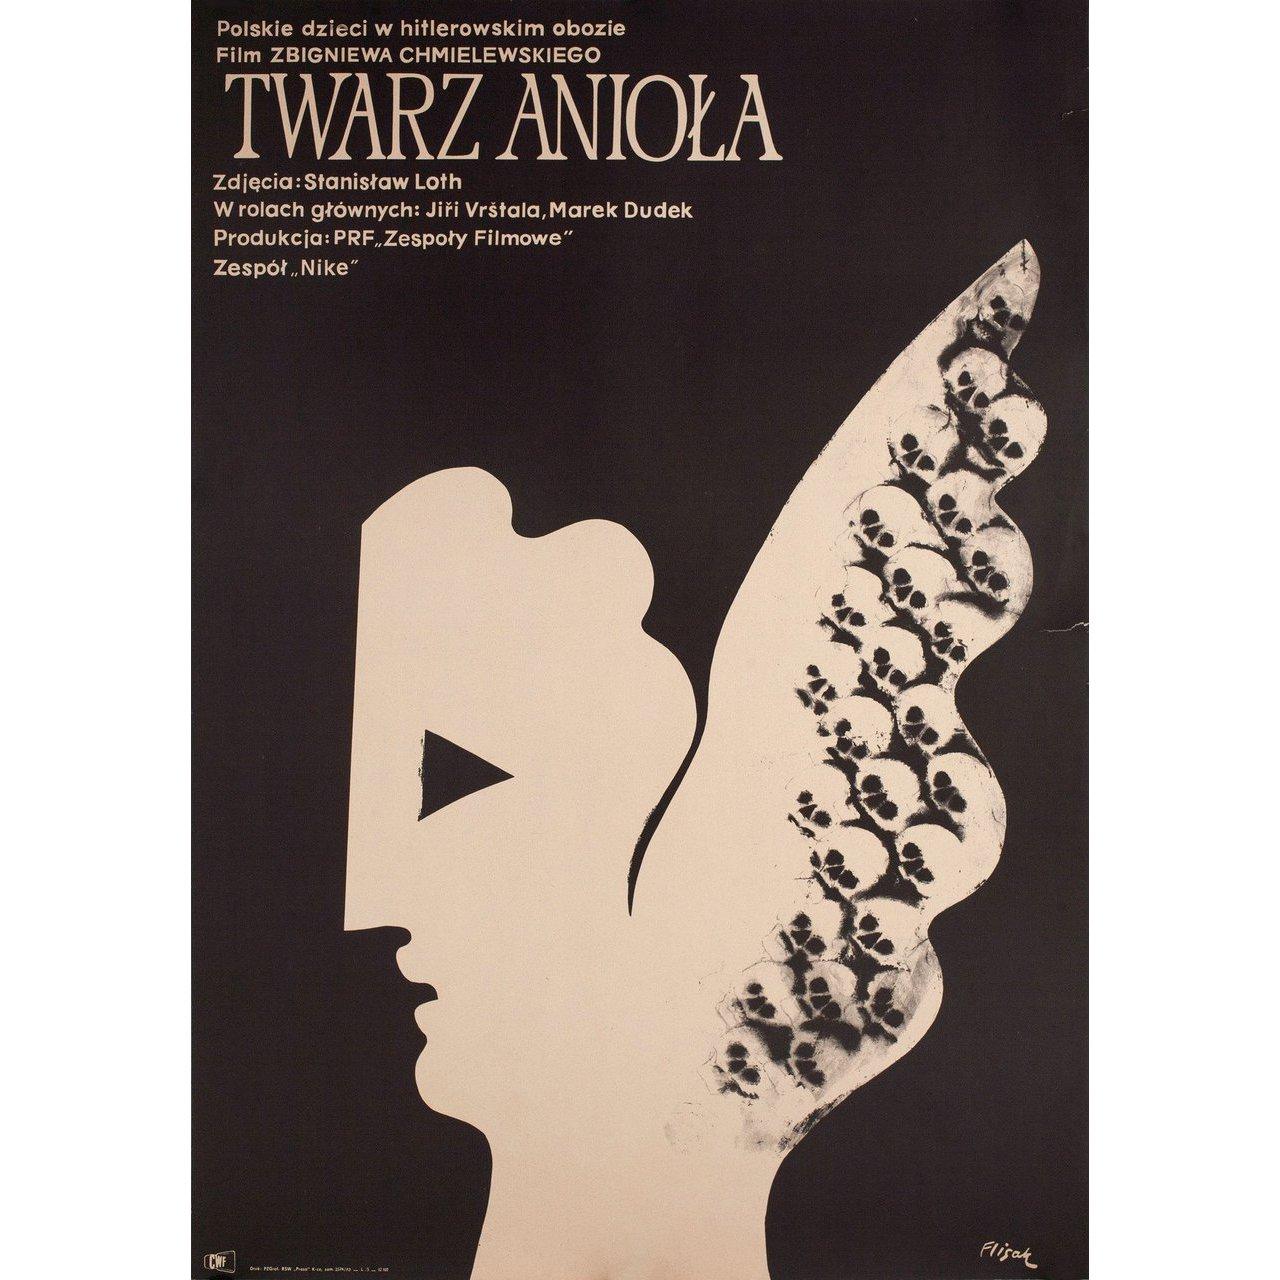 Original 1971 Polish A1 poster by Jerzy Flisak for the film ‘Twarz Aniola’ directed by Zbigniew Chmielewski with Jiri Vrstala / Marek Dudek / Zygmunt Malawski / Wojciech Pszoniak. Very good-fine condition, folded. Many original posters were issued